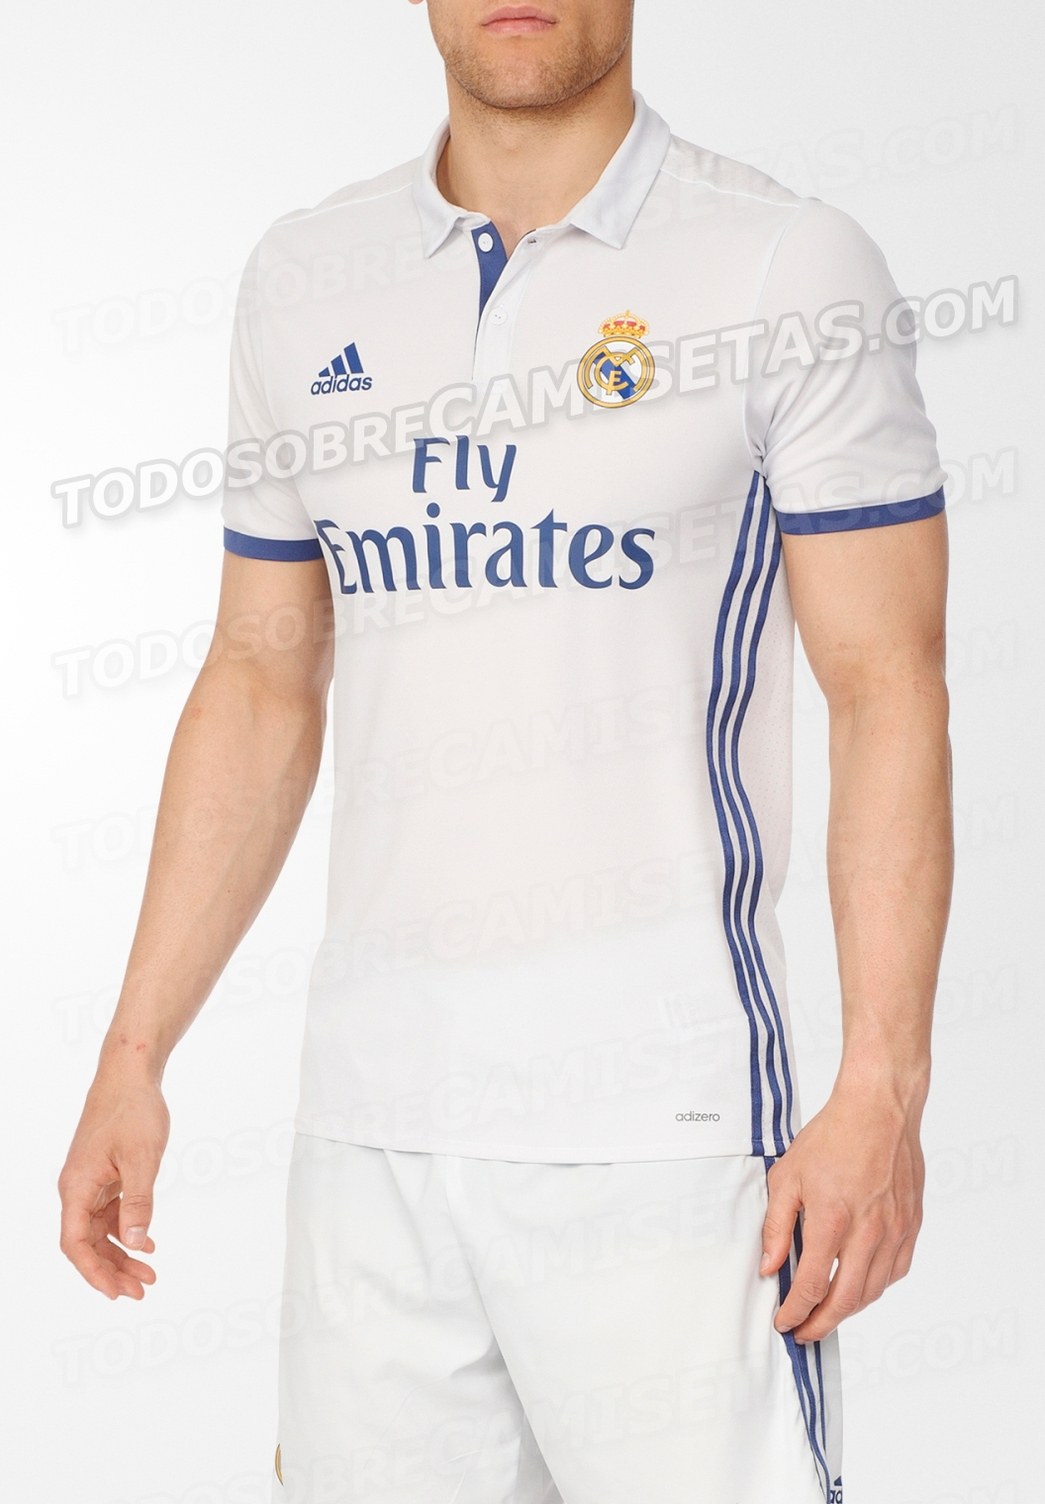 Real-Madrid-16-17-adidas-new-home-kit-leaked-9.jpg